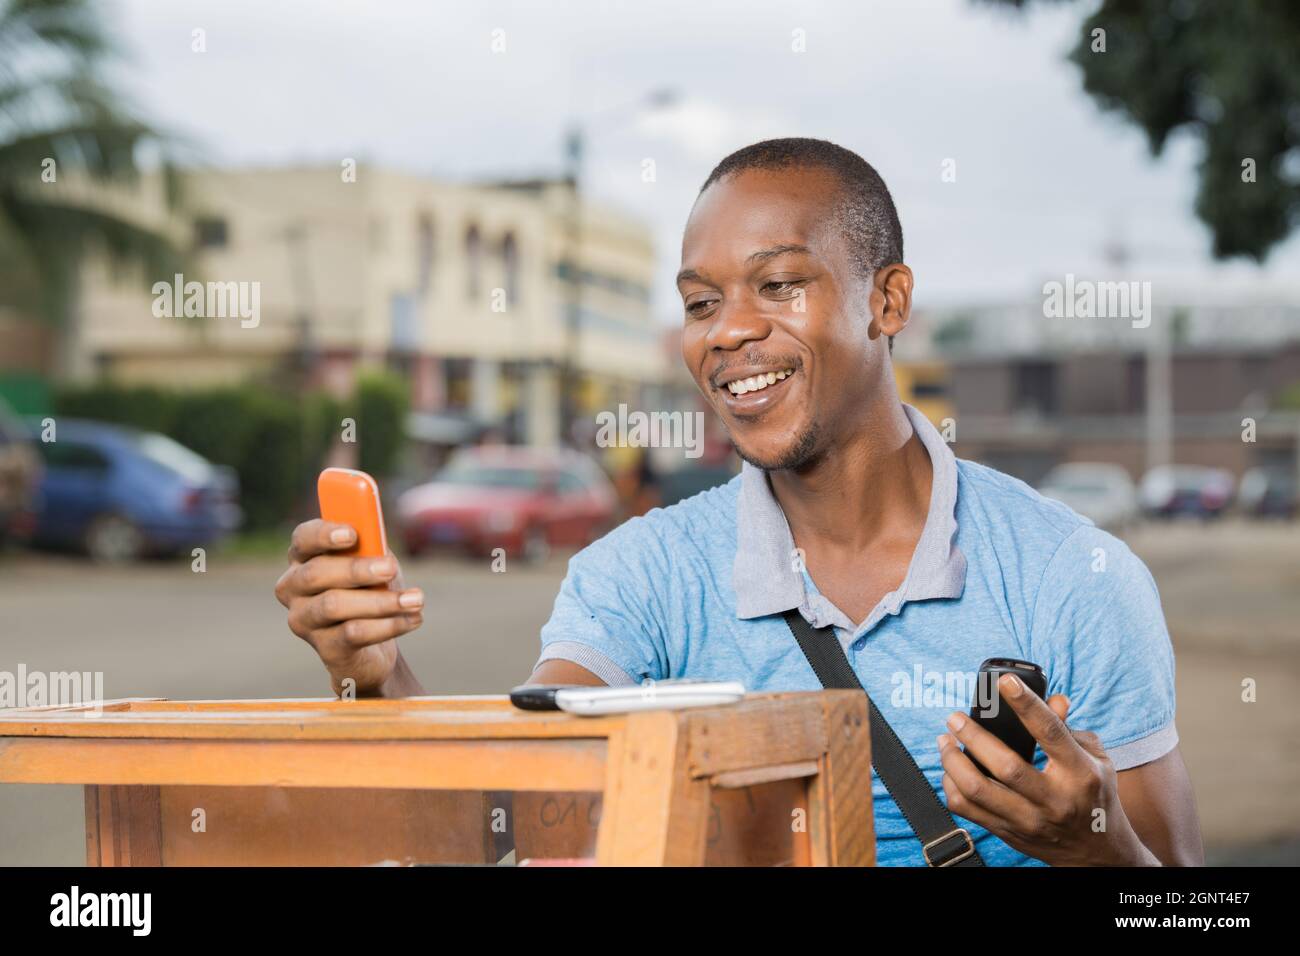 jeune travailleur souriant avec des téléphones en mains Stockfoto